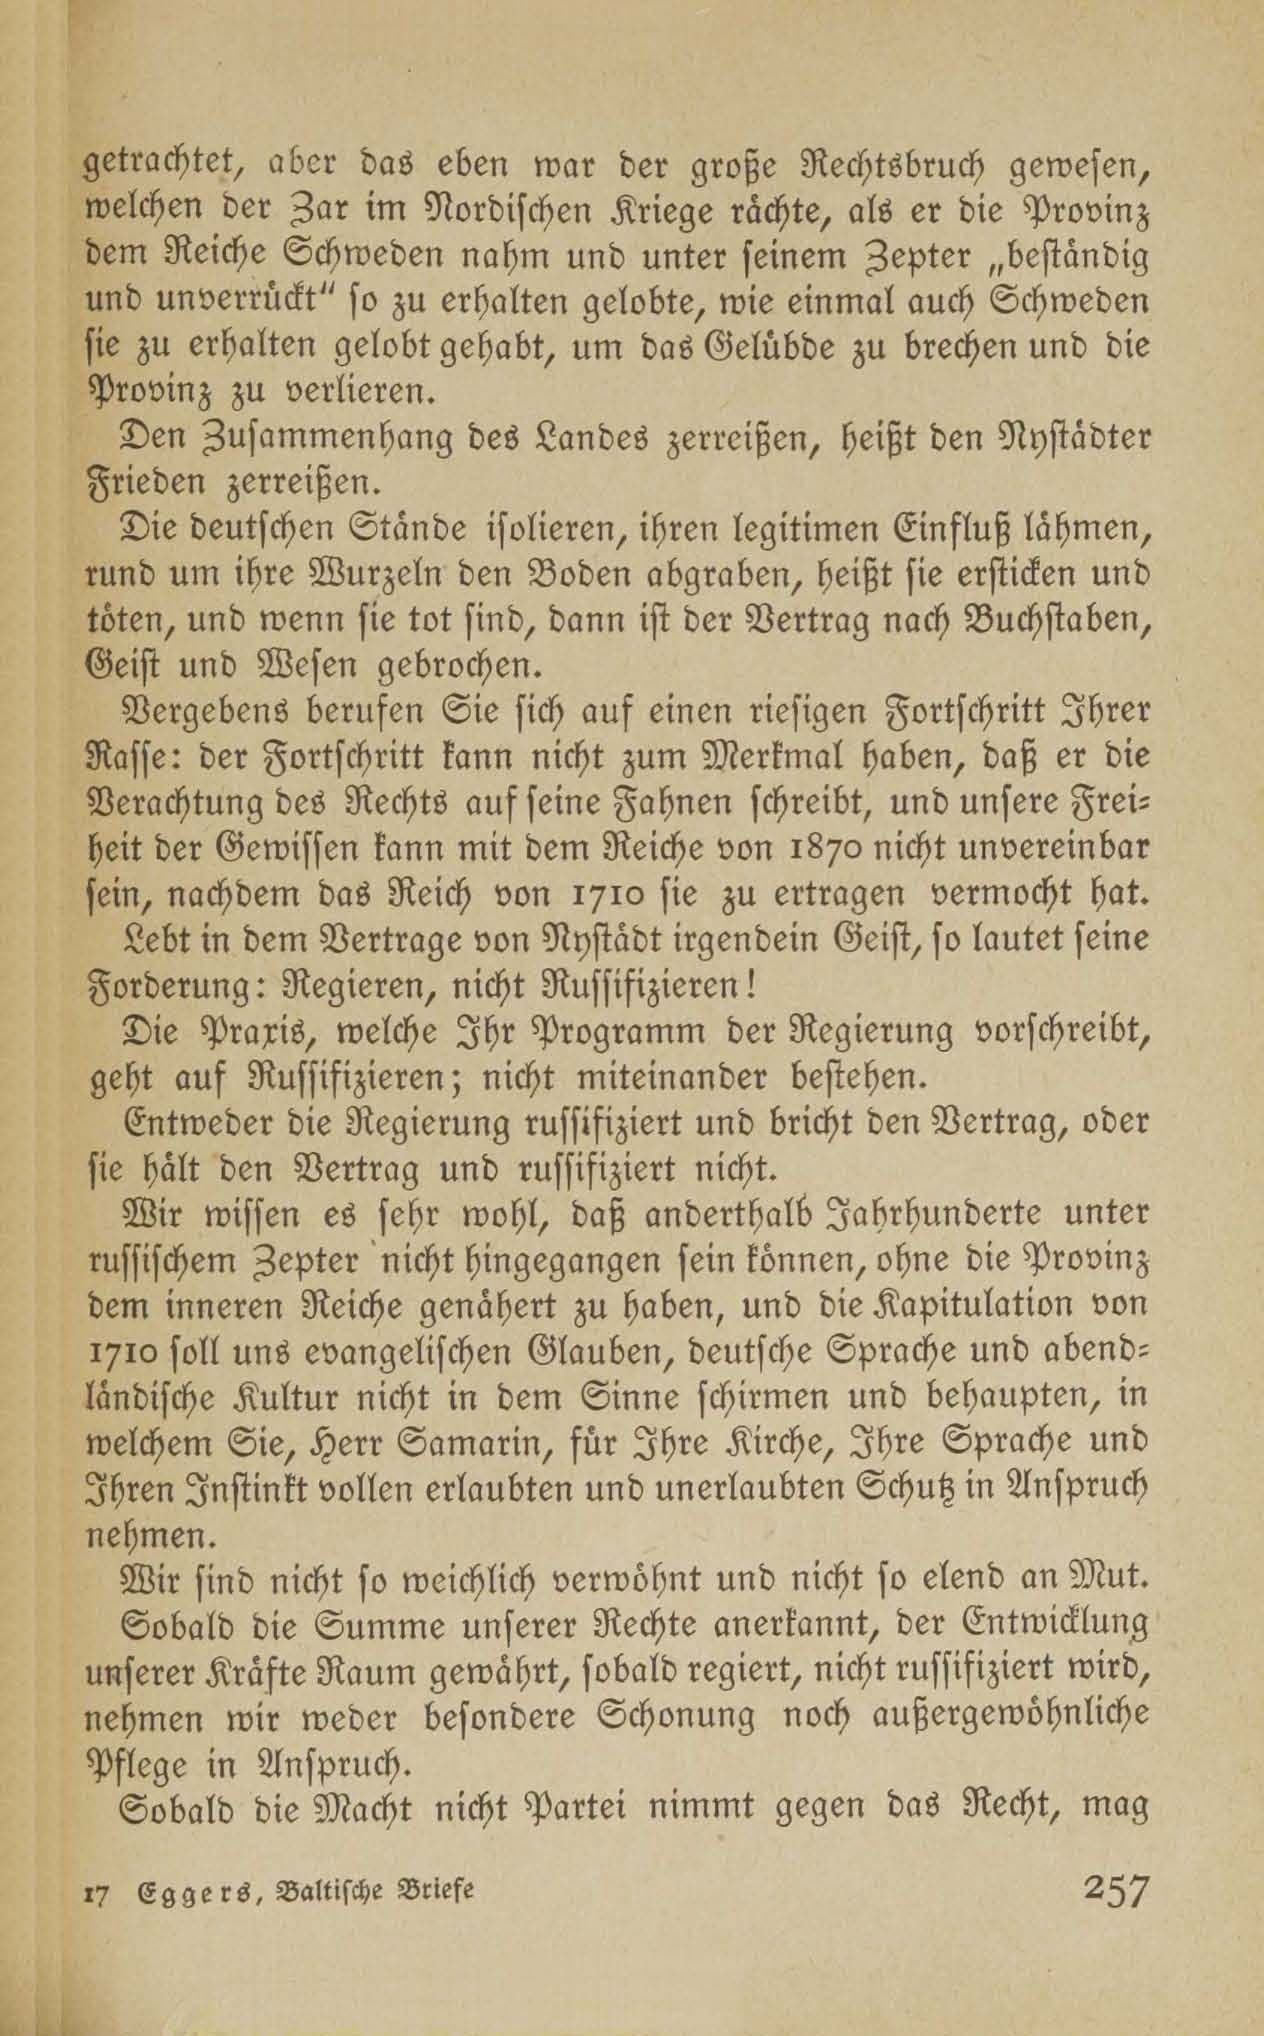 Im Kampf für die baltischen Landesrechte (1917 ?) | 26. (257) Основной текст